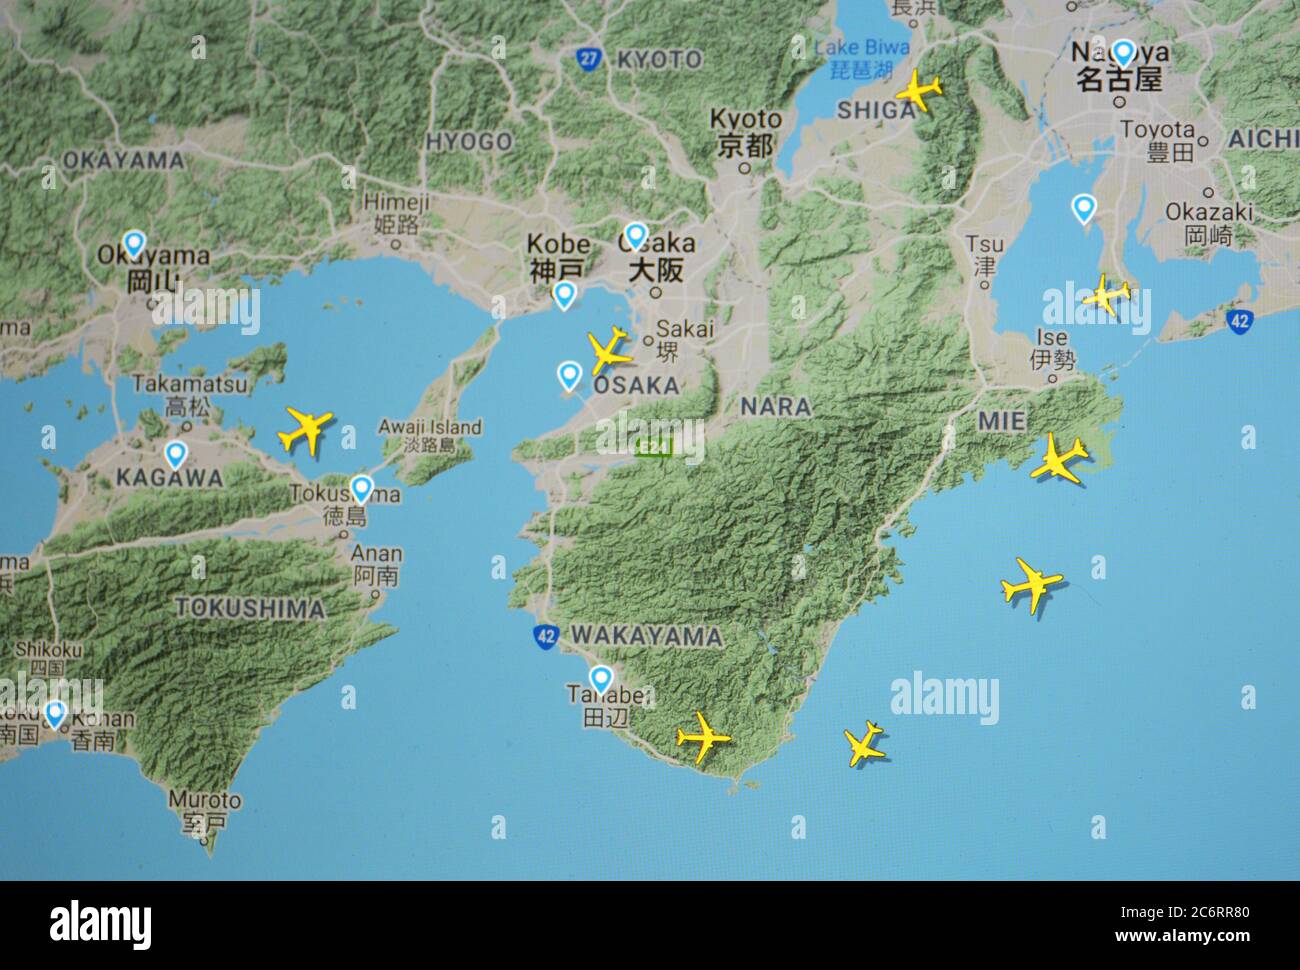 Flugverkehr über Osaka (11. juli 2020, UTC 22.03) im Internet mit Flightradar 24-Standort während der Coronavirus-Pandemie Stockfoto